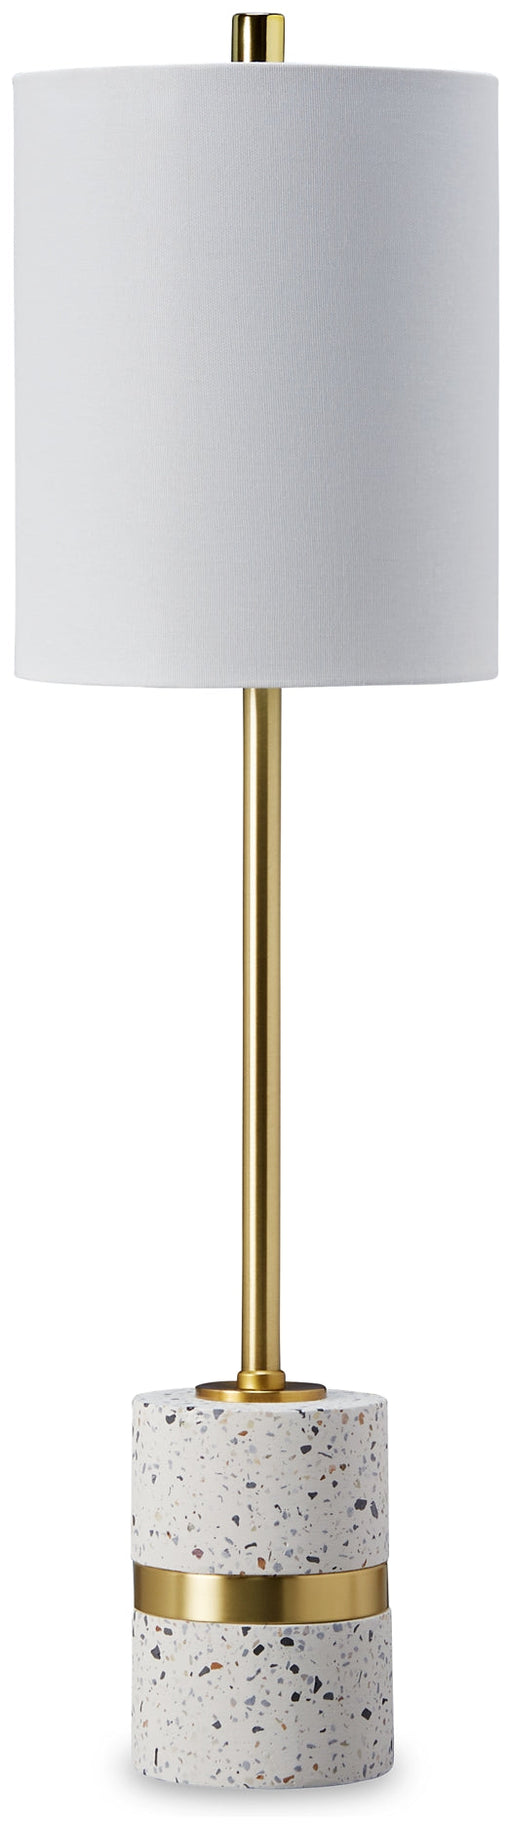 Maywick Metal Table Lamp (1/CN) JR Furniture Storefurniture, home furniture, home decor